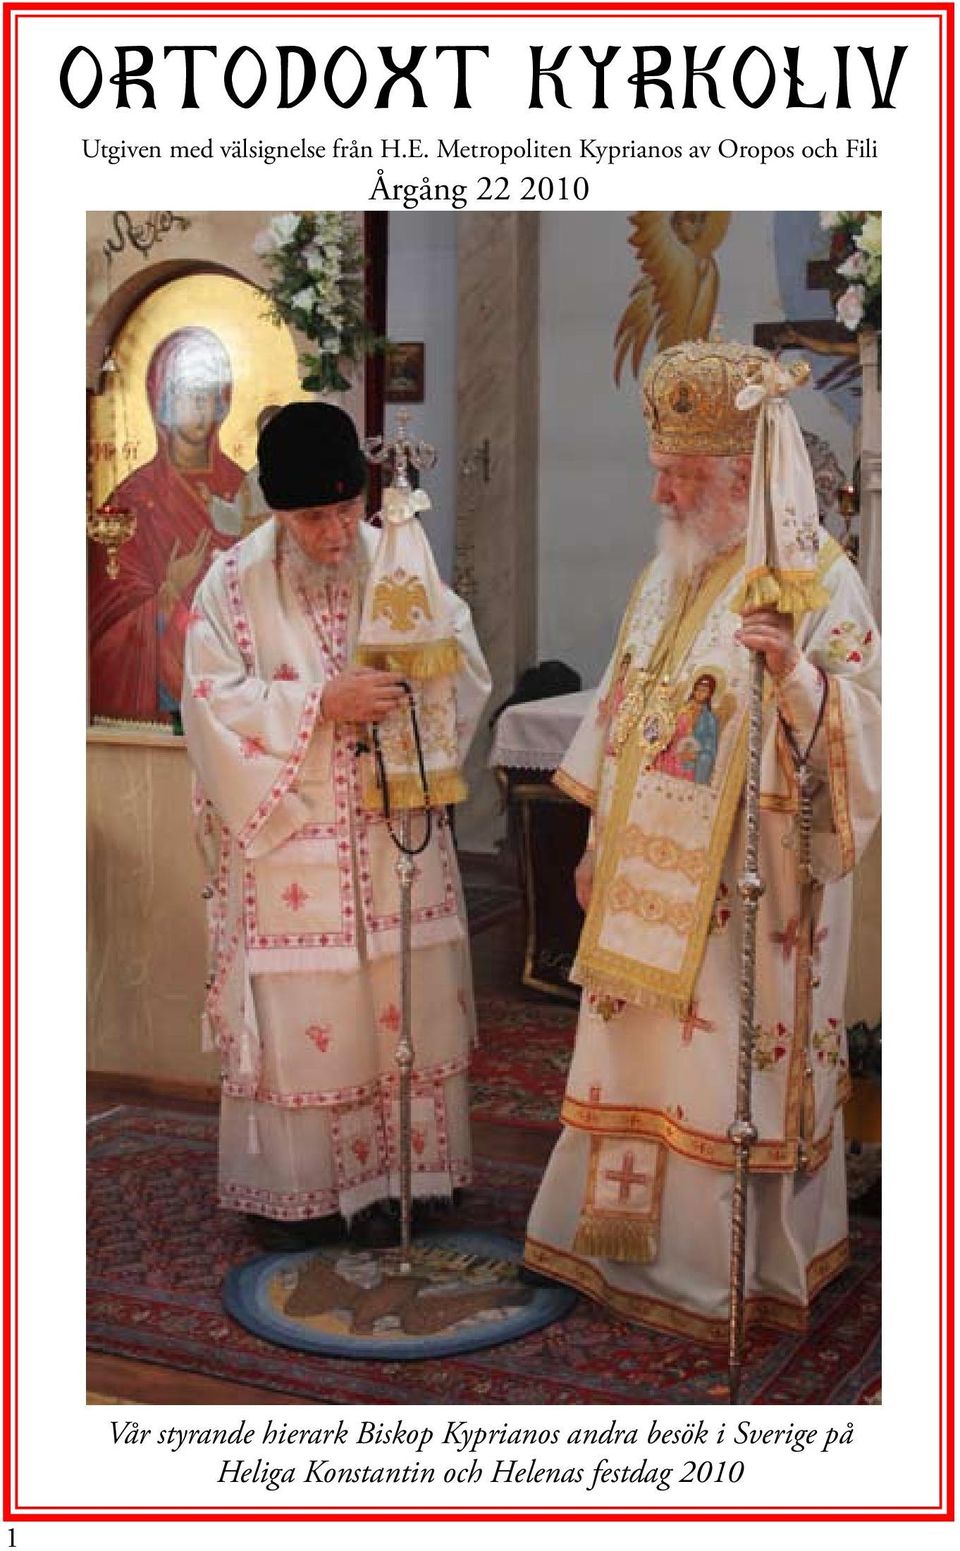 2010 Vår styrande hierark Biskop Kyprianos andra